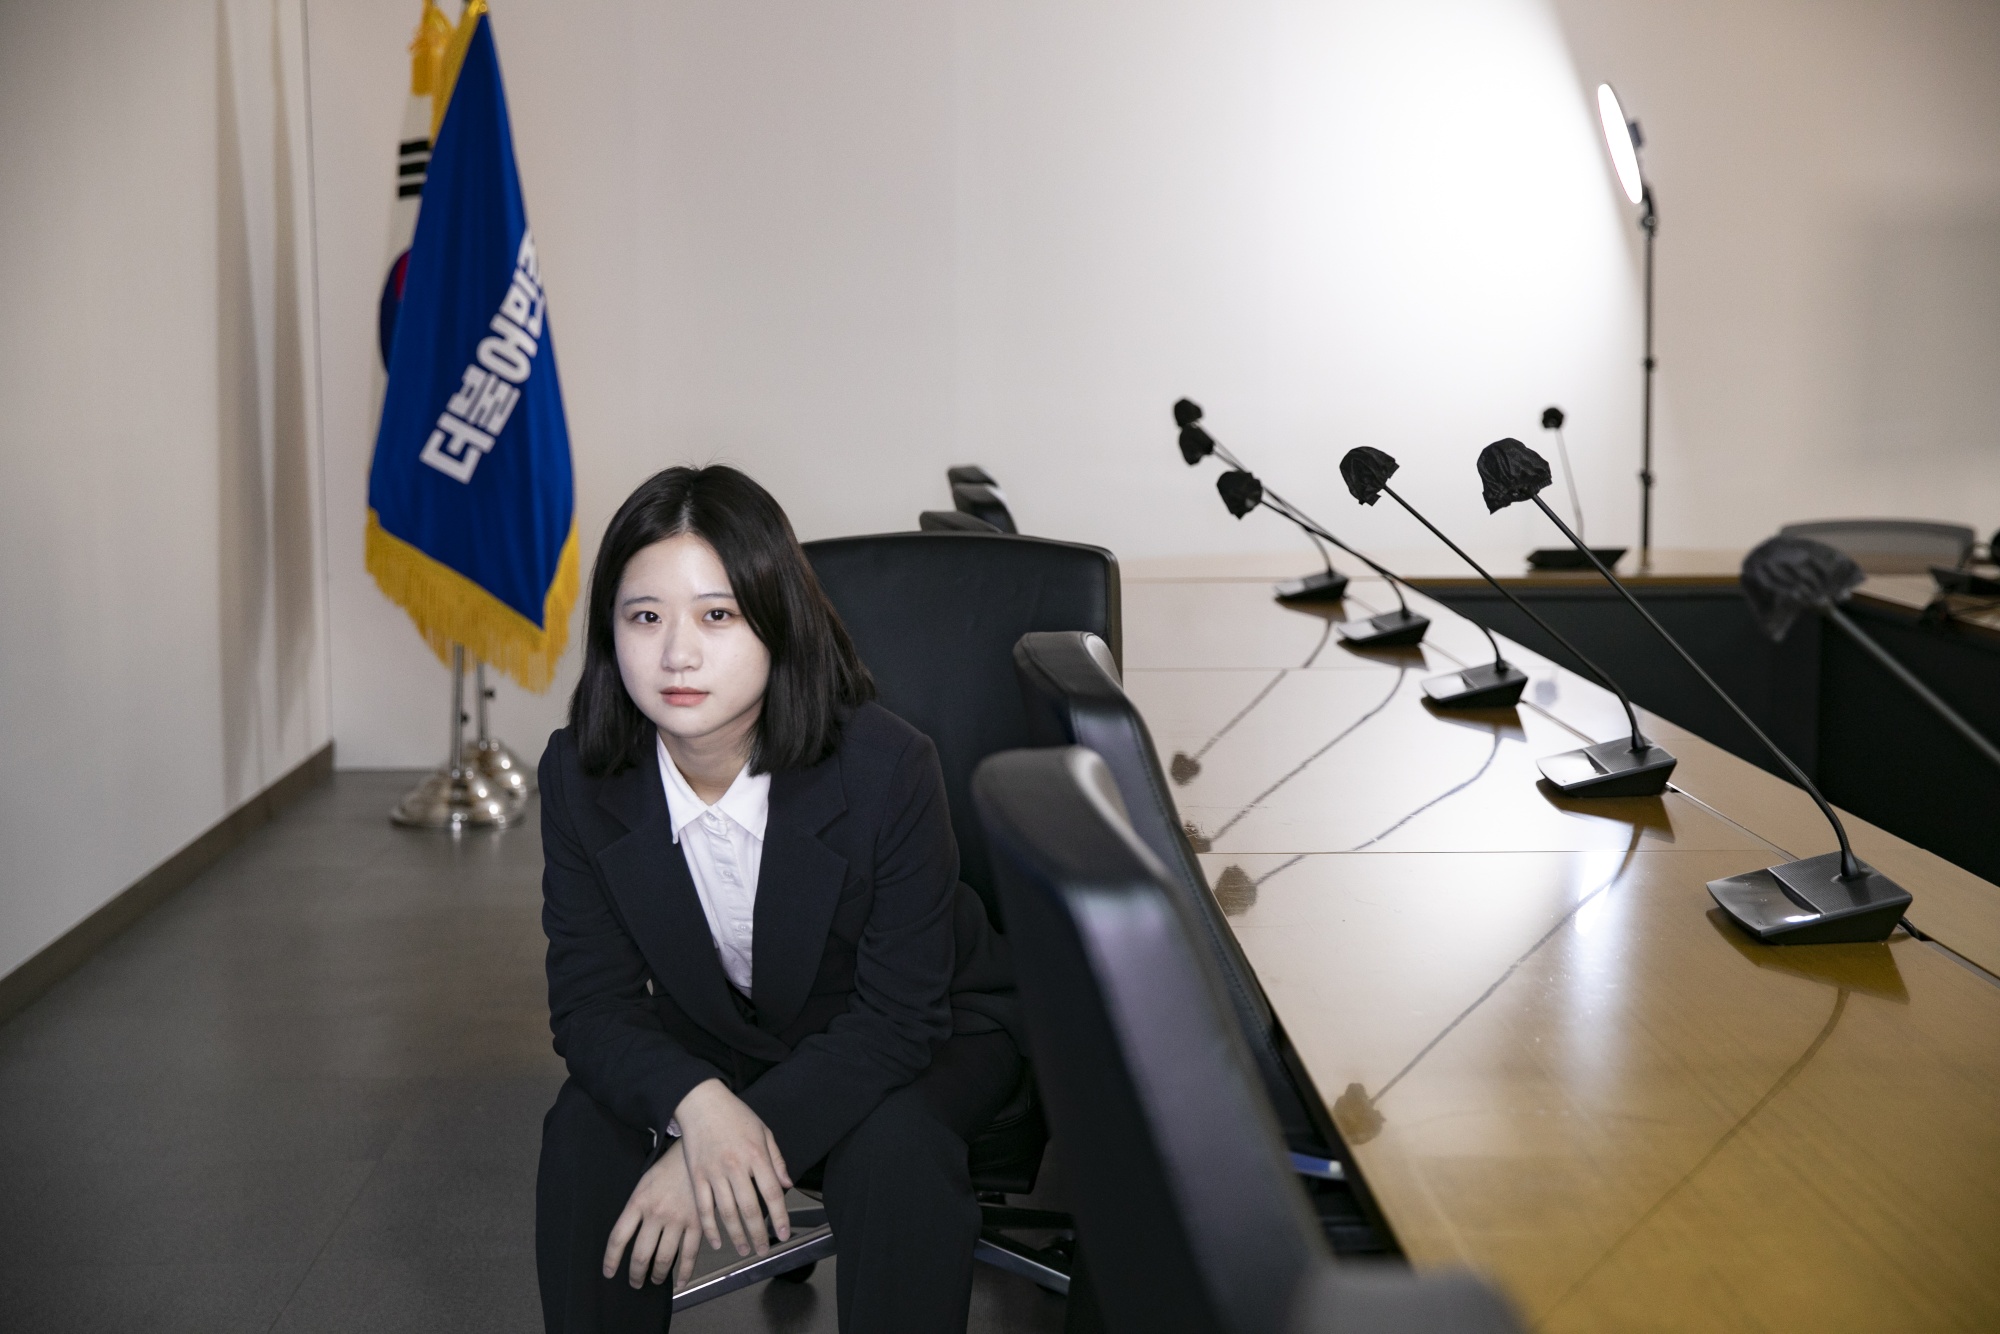 Korianxnxx - Women's Rights Activist Is Taking on South Korea's President Yoon Suk Yeol  - Bloomberg